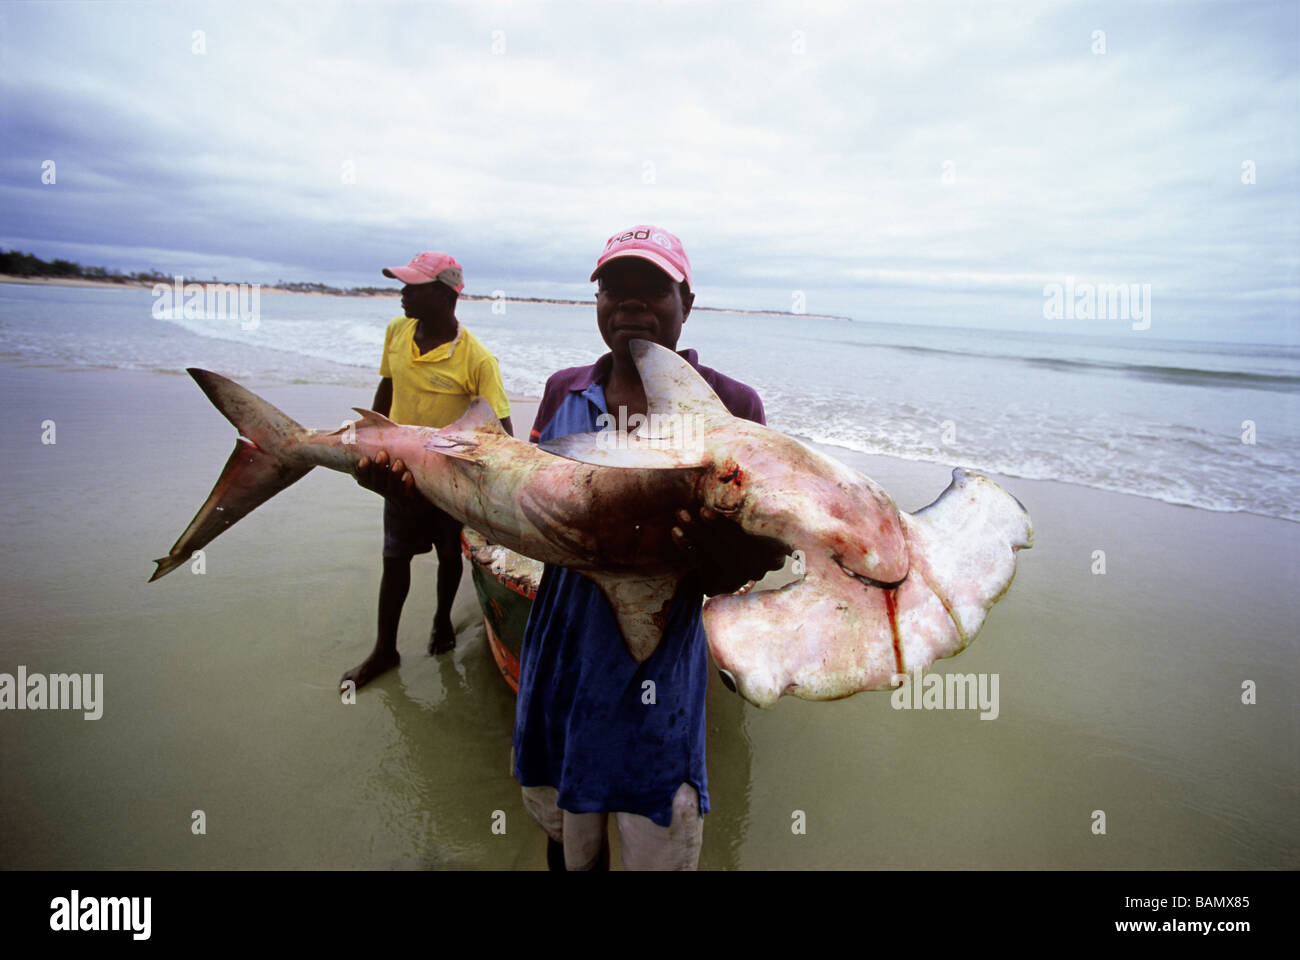 Pêcheur avec requin capturé à la ligne à main Inhassoro Mozambique Banque D'Images